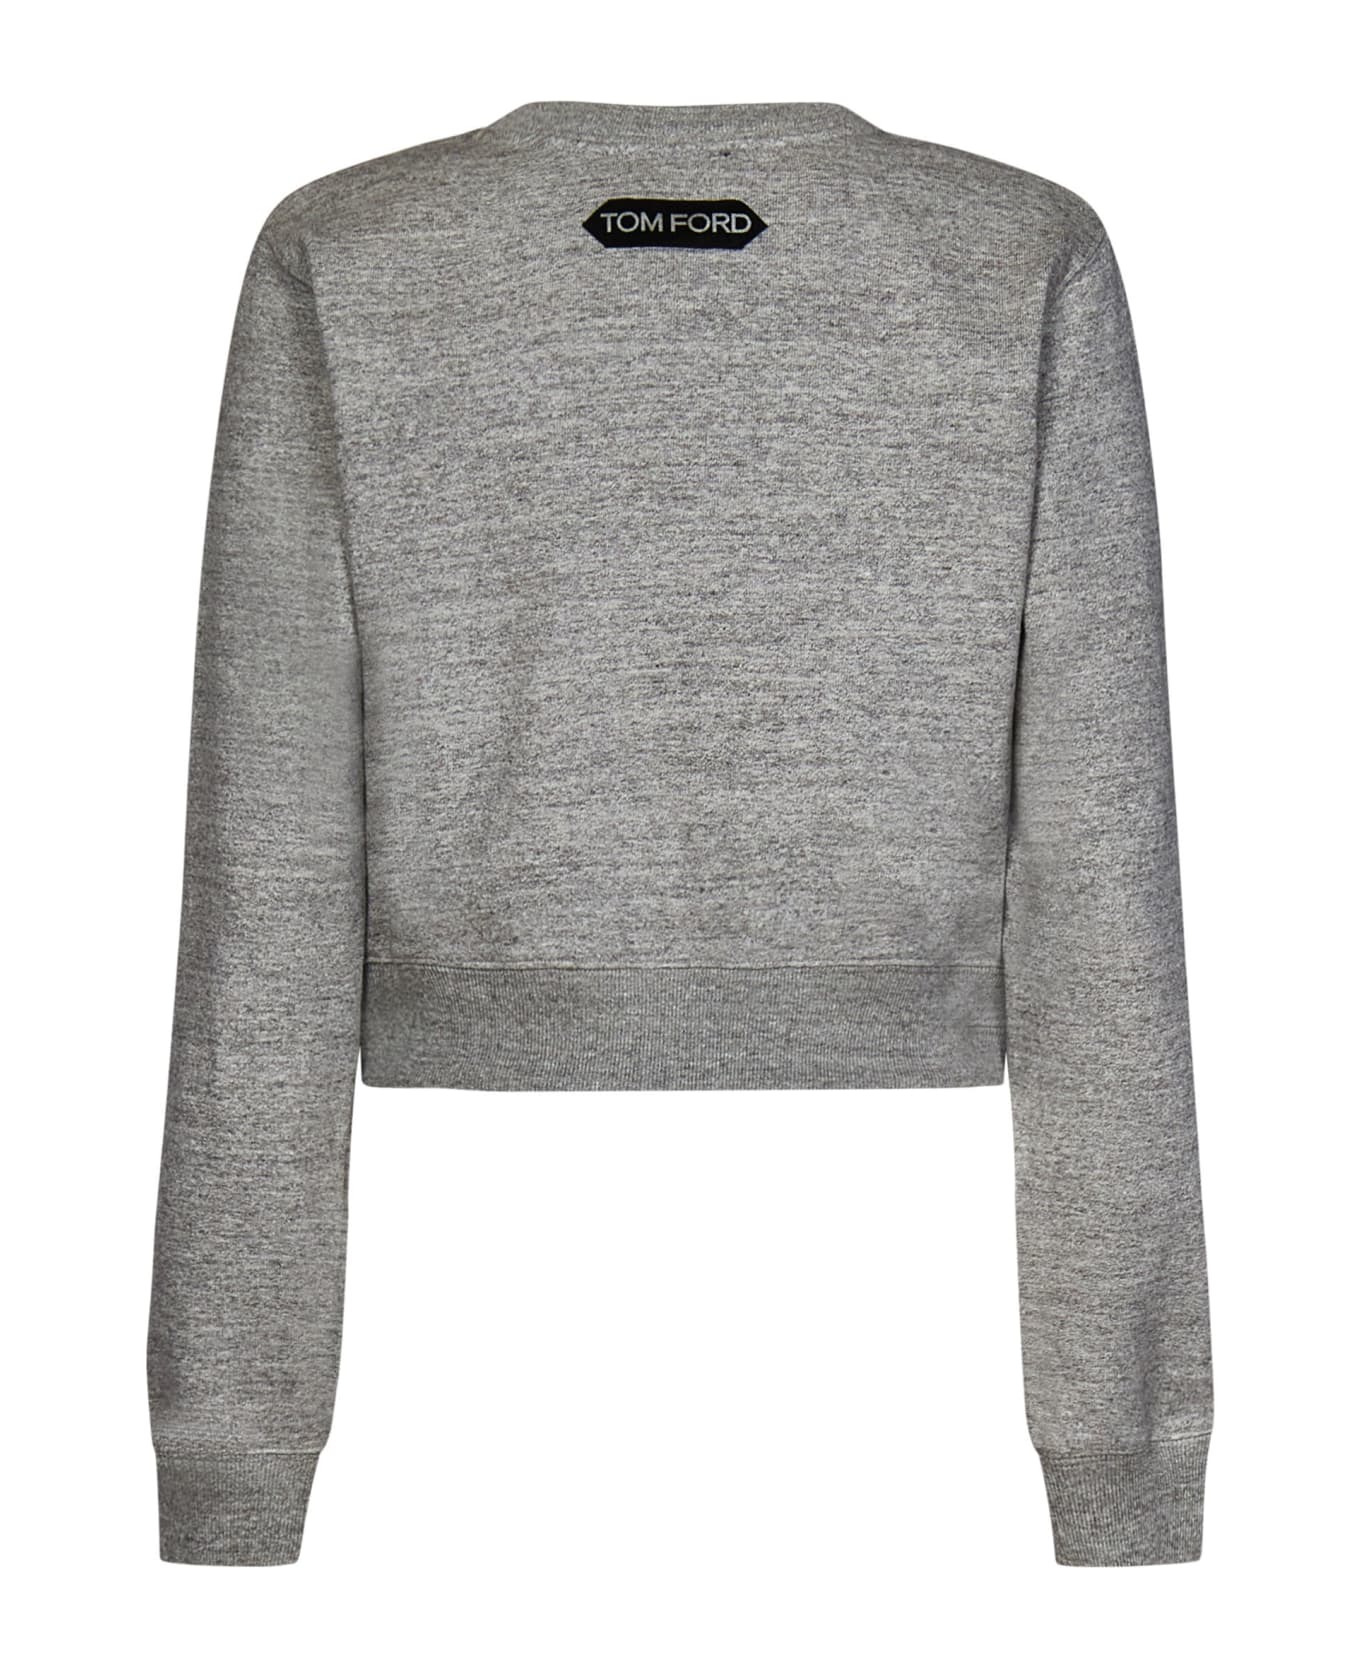 Tom Ford Sweatshirt - Grey